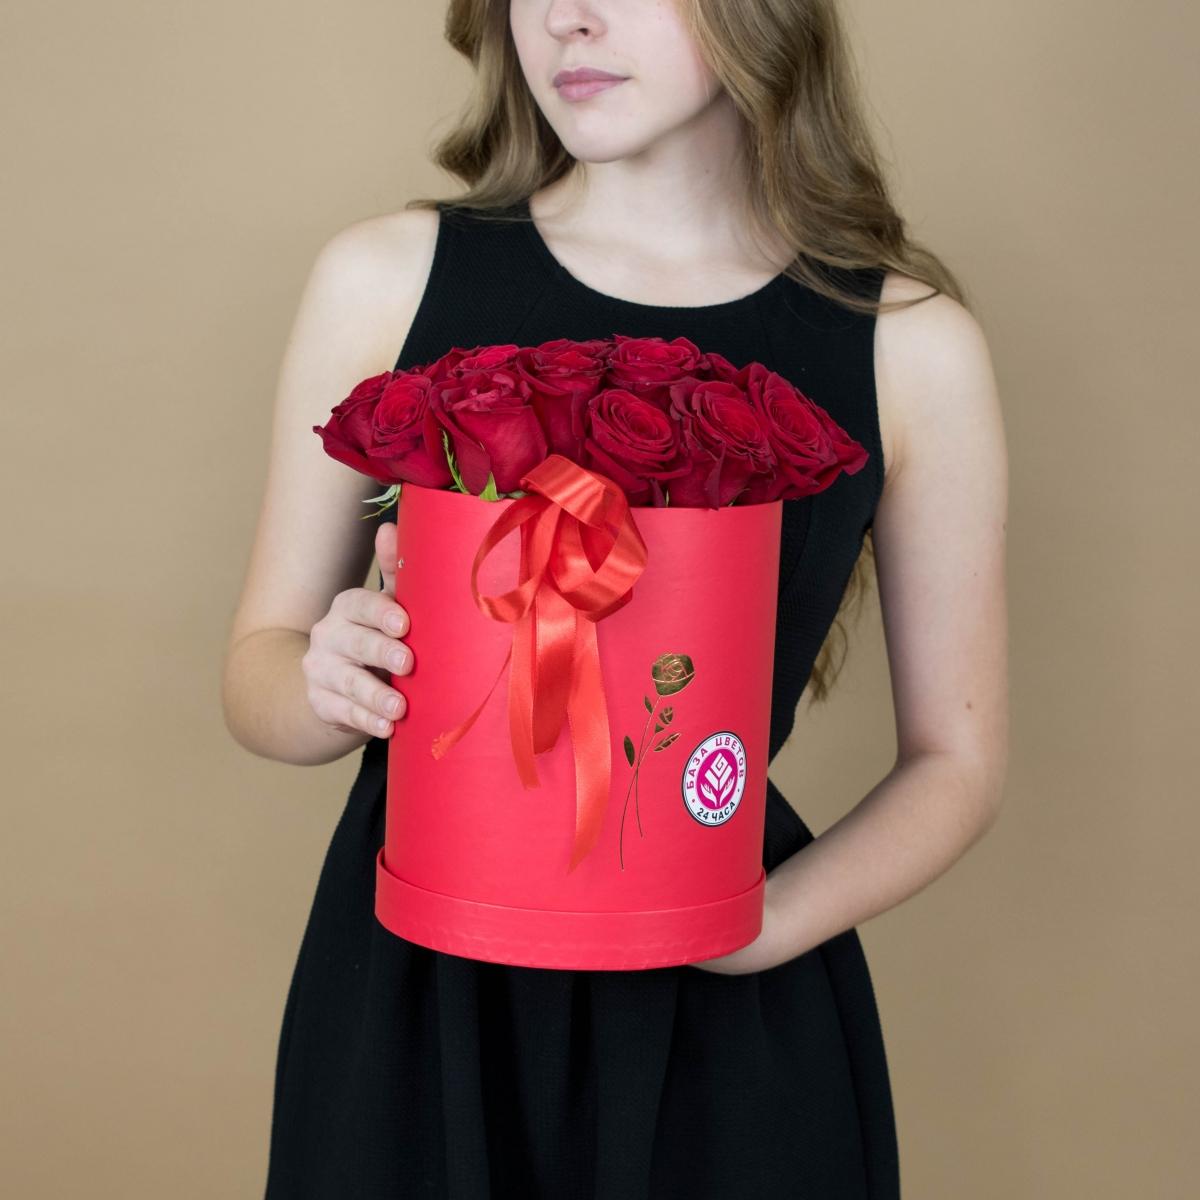 Розы красные в шляпной коробке [код товара: 130s]